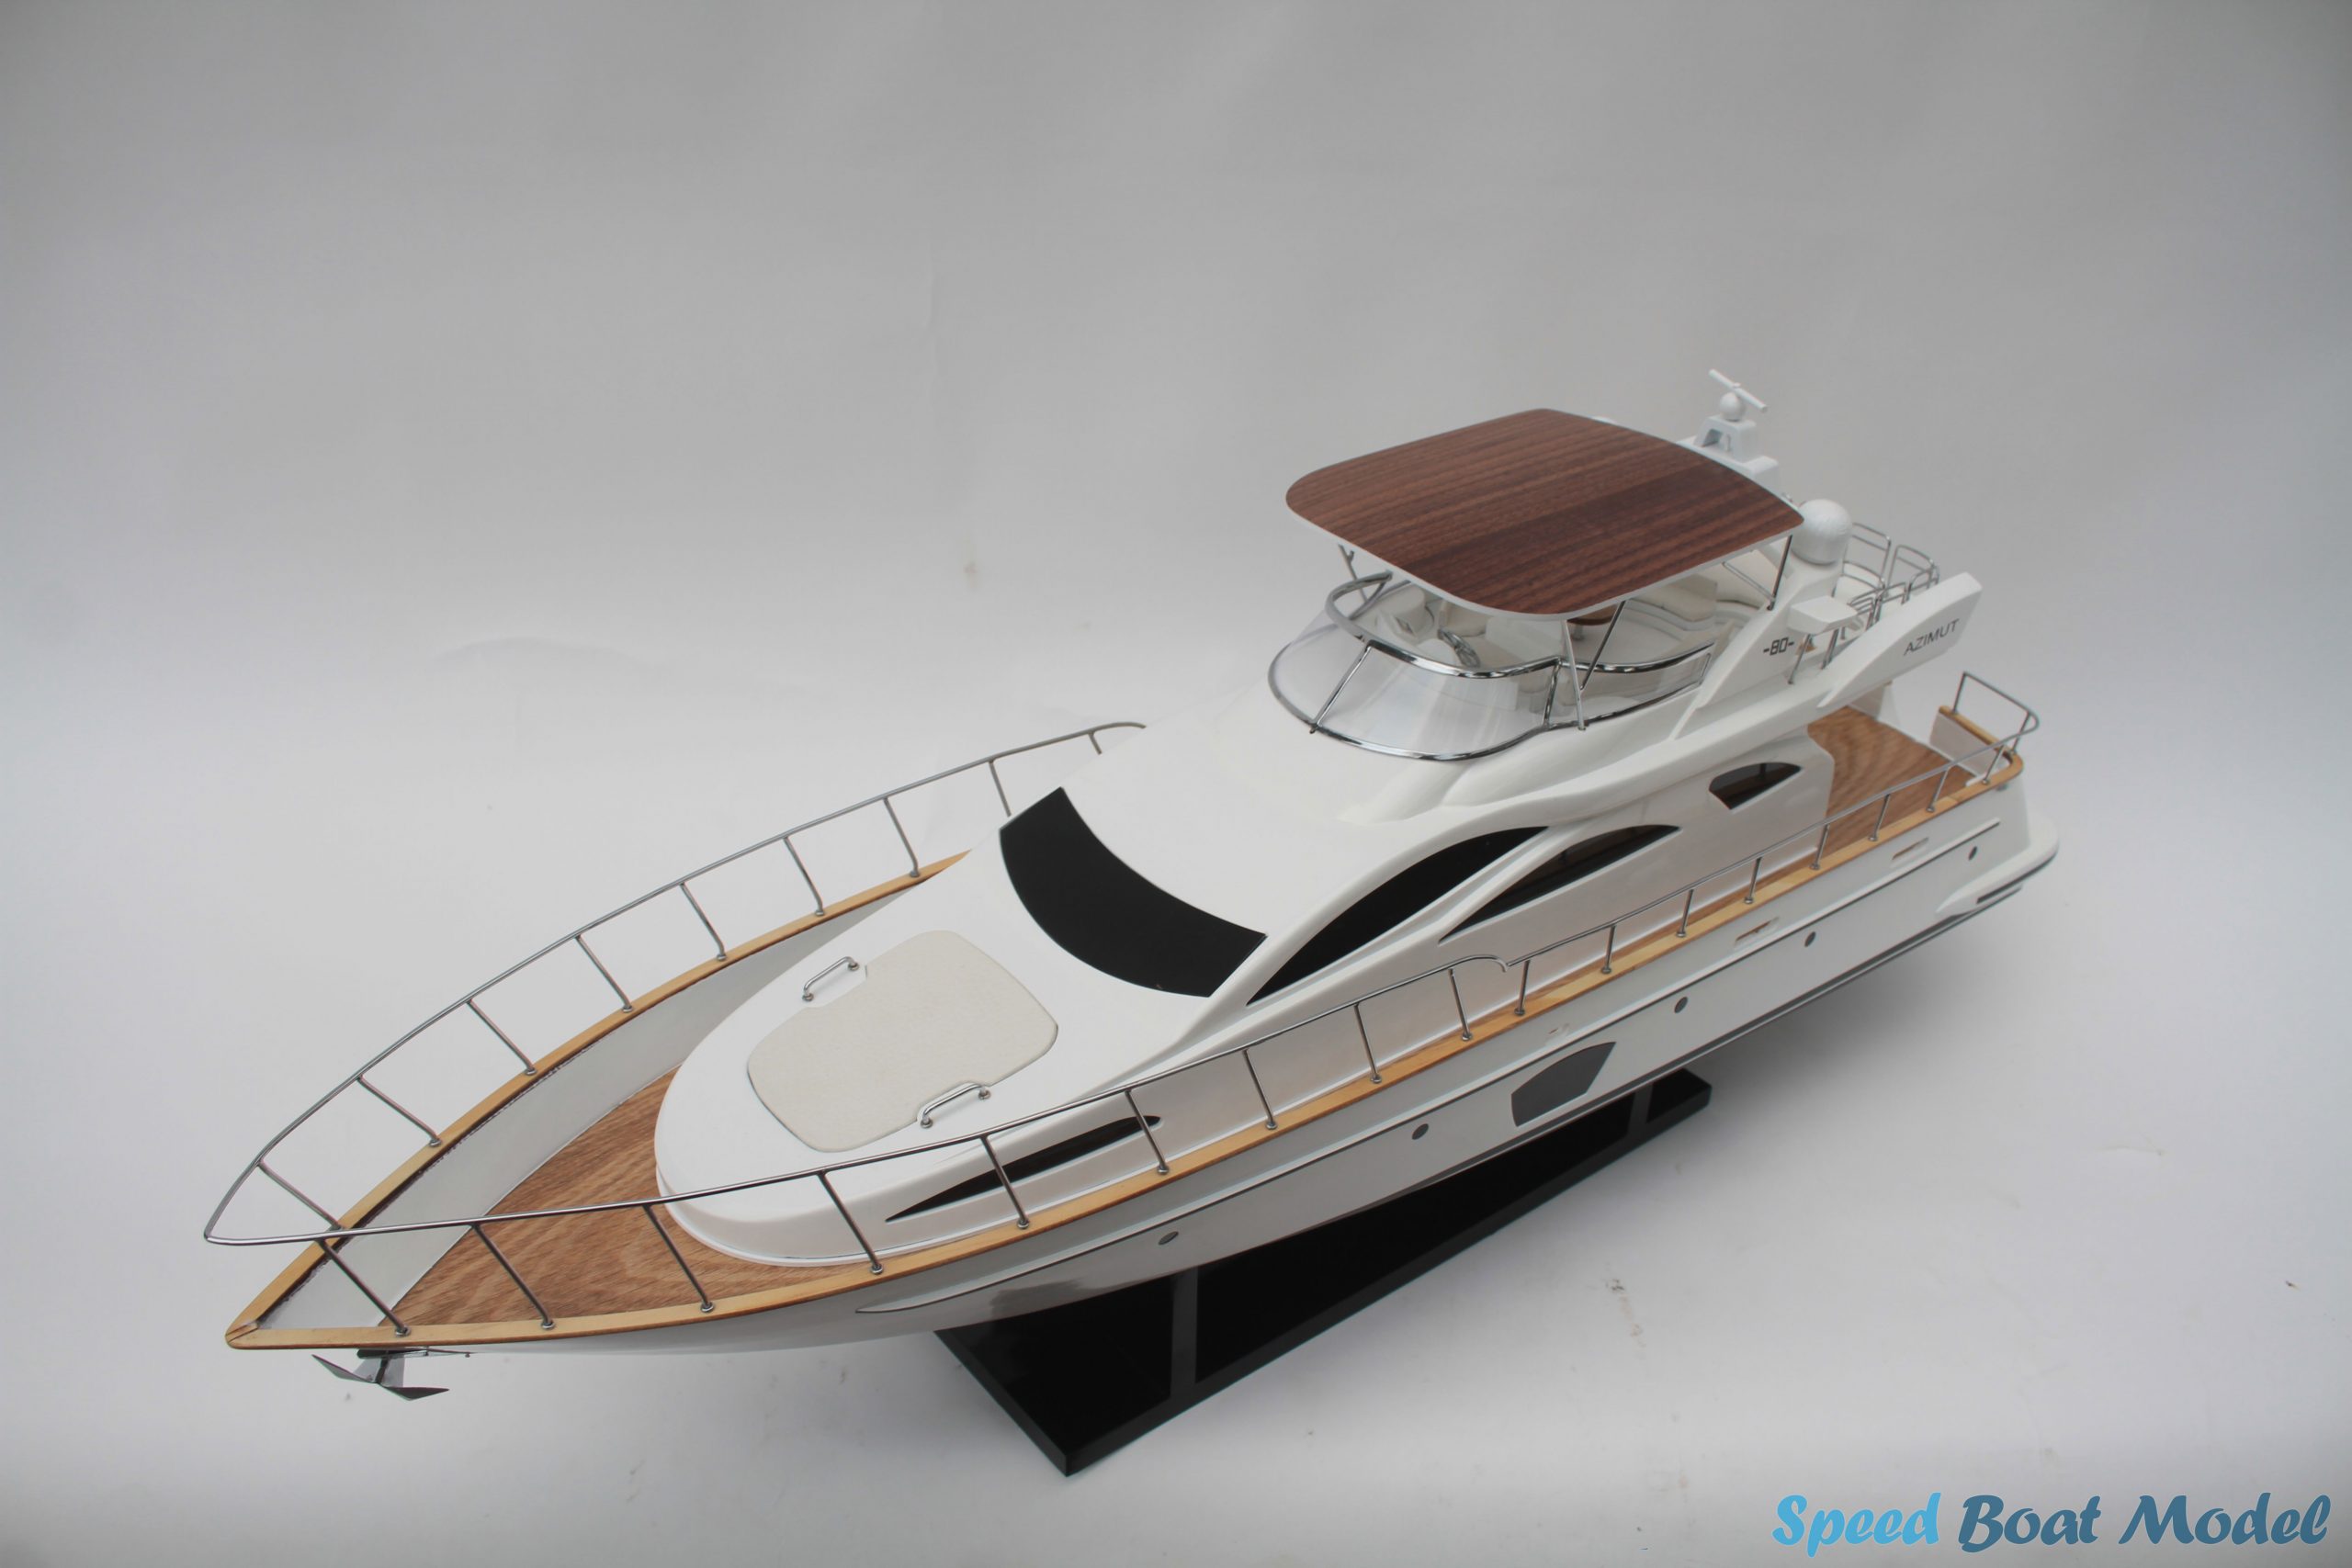 Azimut 80 Modern Yacht Model (Option 2) 33.5"